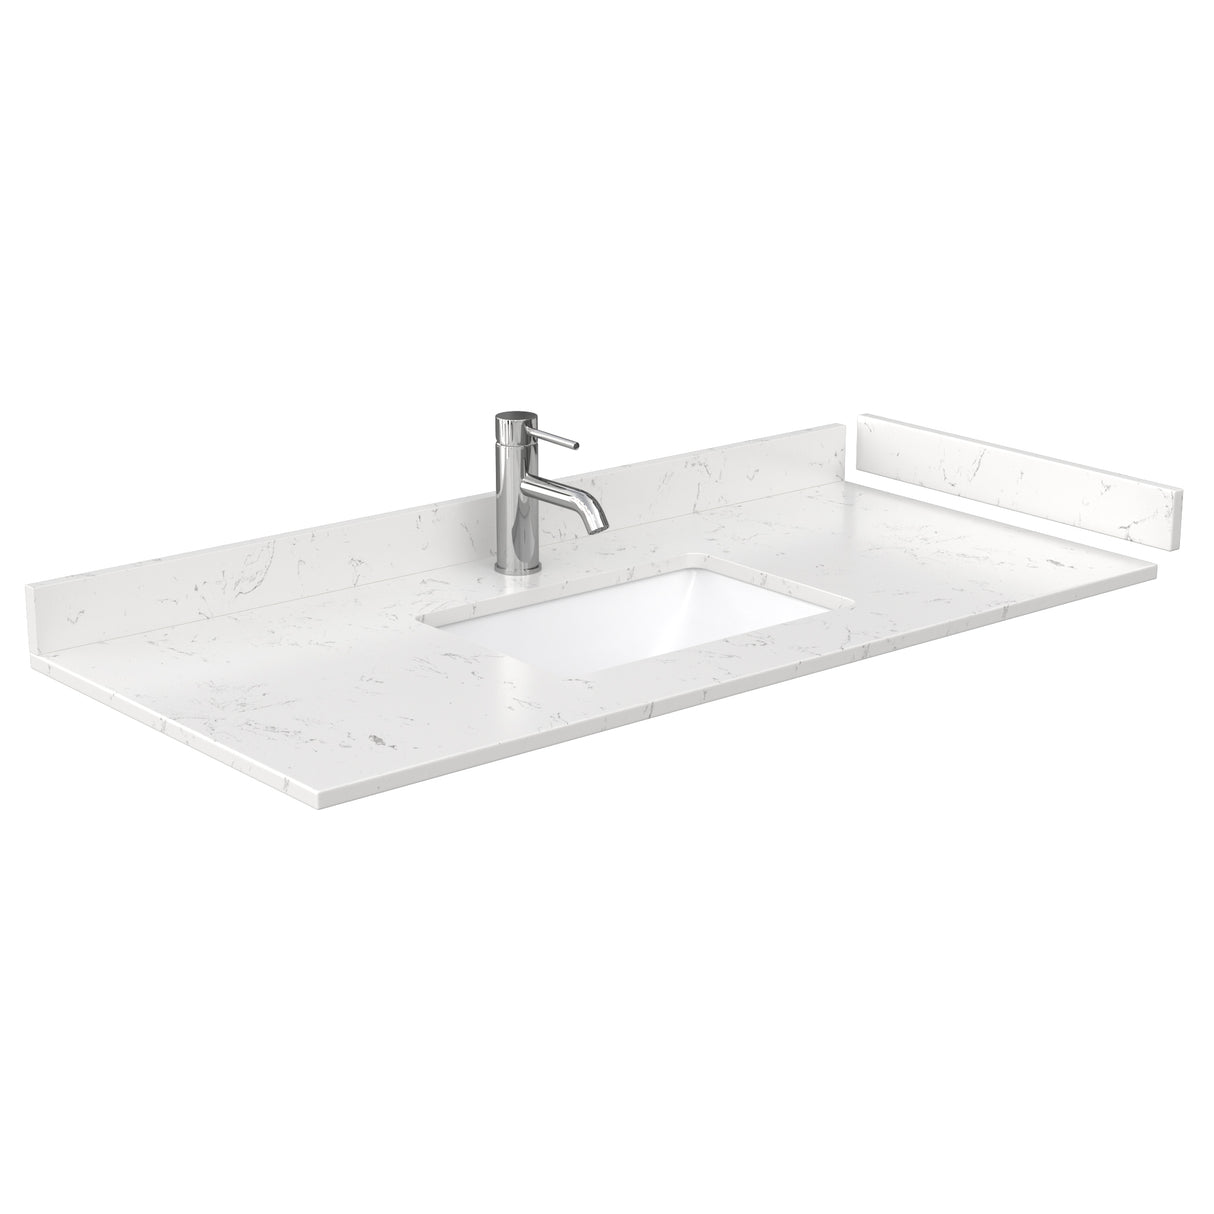 Daria 48 Inch Single Bathroom Vanity in White Carrara Cultured Marble Countertop Undermount Square Sink No Mirror